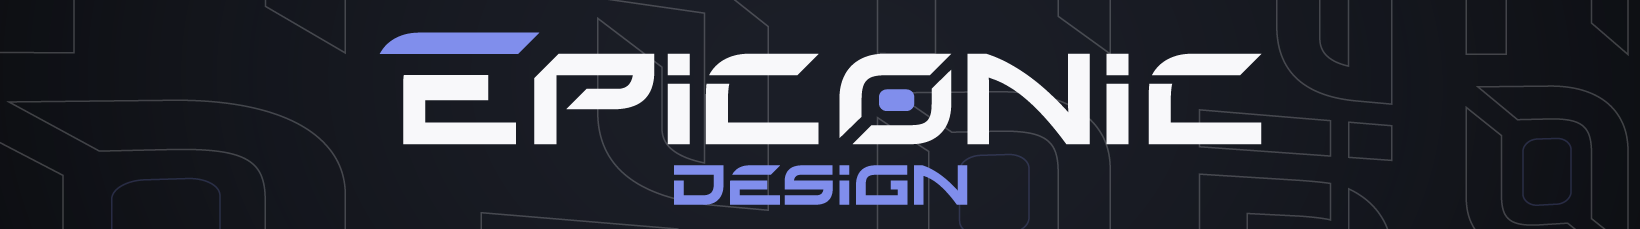 Epiconic Design's profile banner